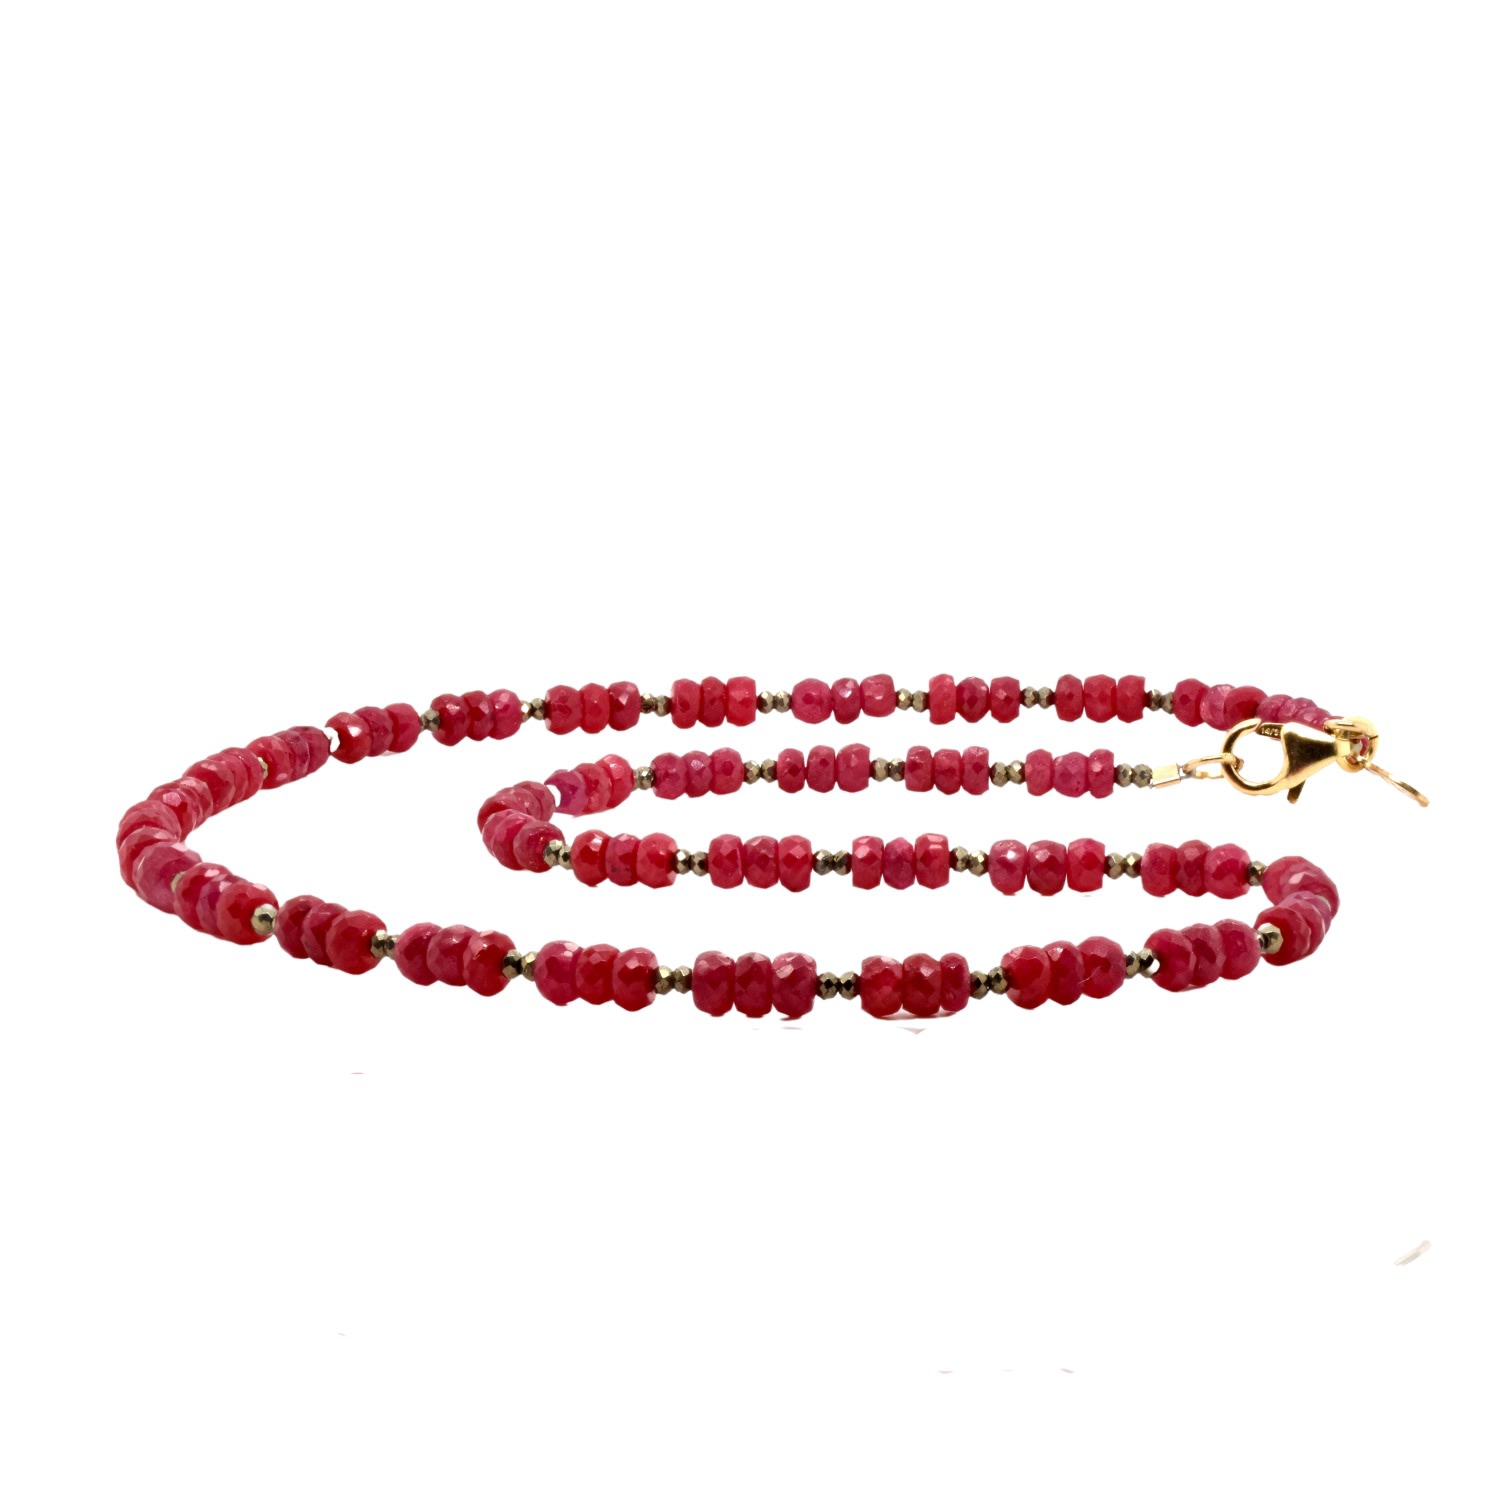 Lori Kaplan Design Women's Gold / Black / Red Ruby & Pyrite Gold Necklace